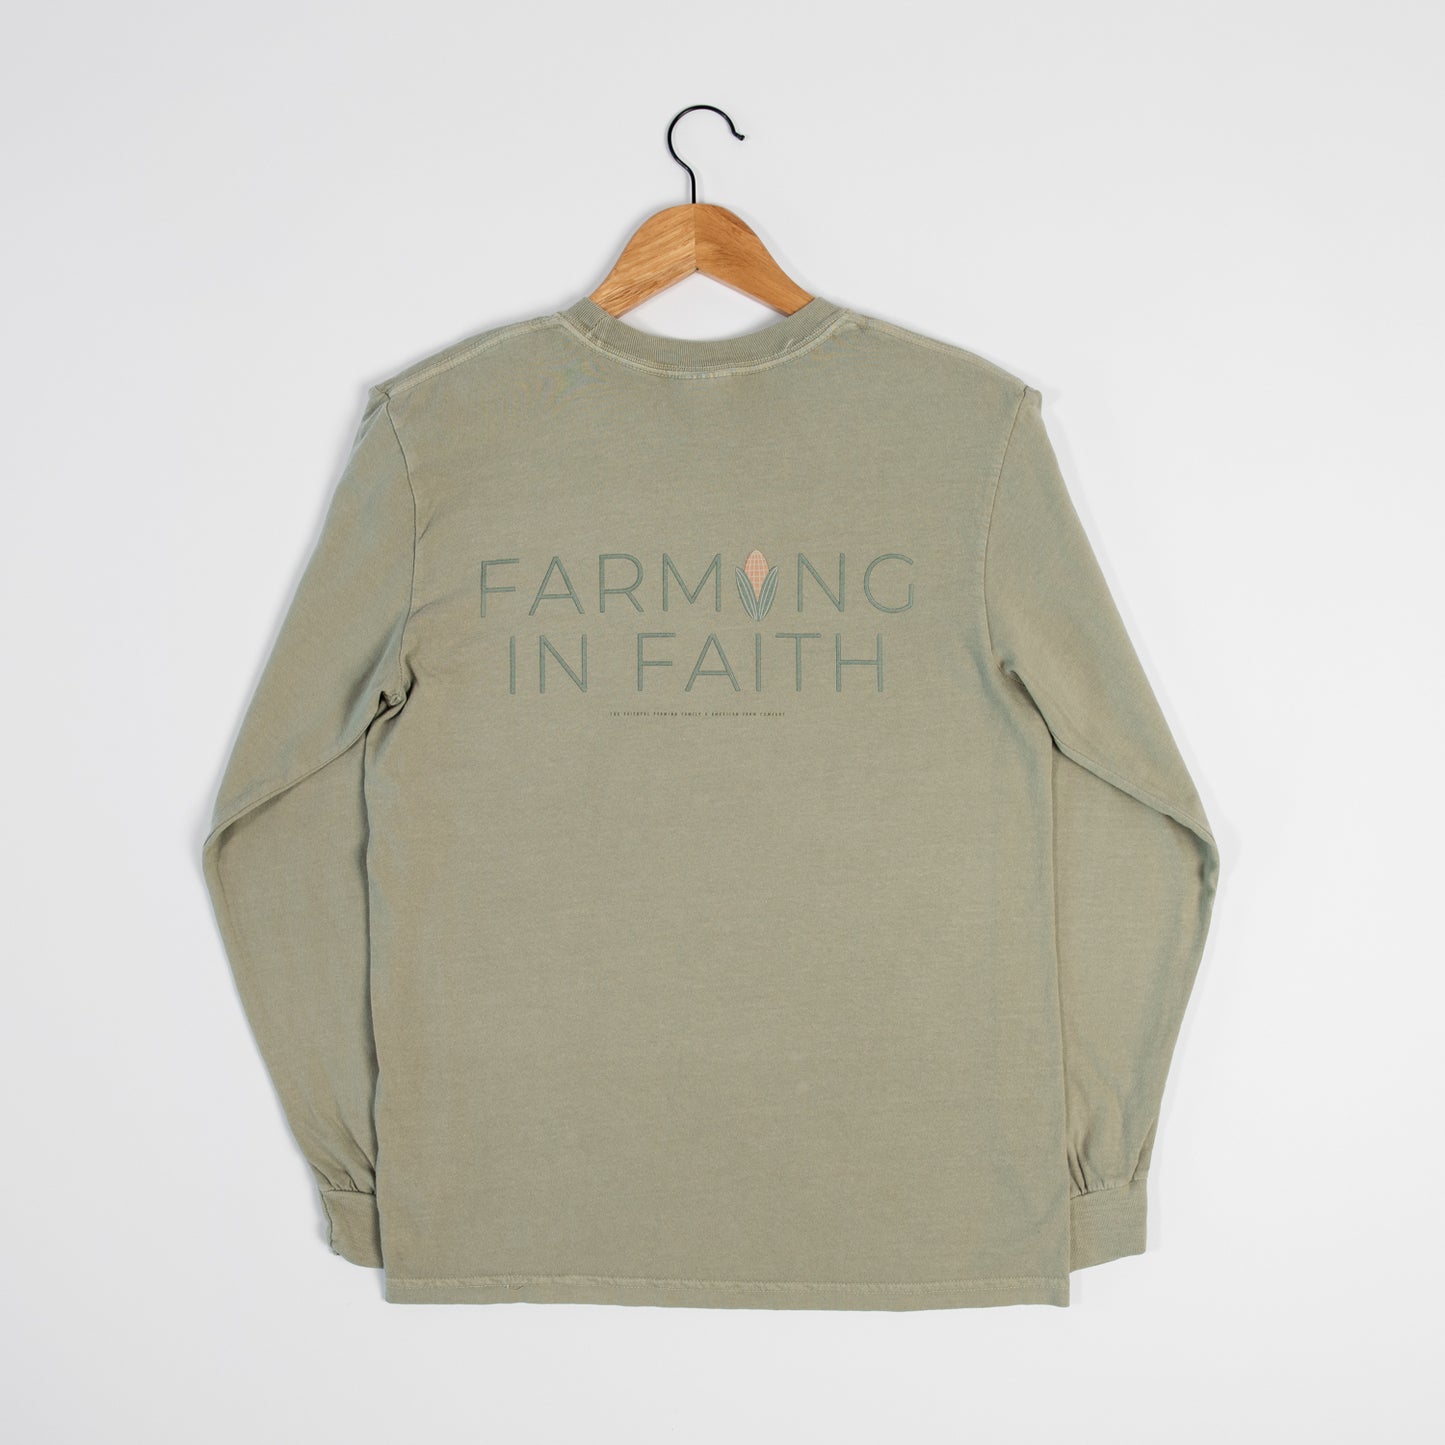 Farming in Faith 2 Sided Long Sleeve